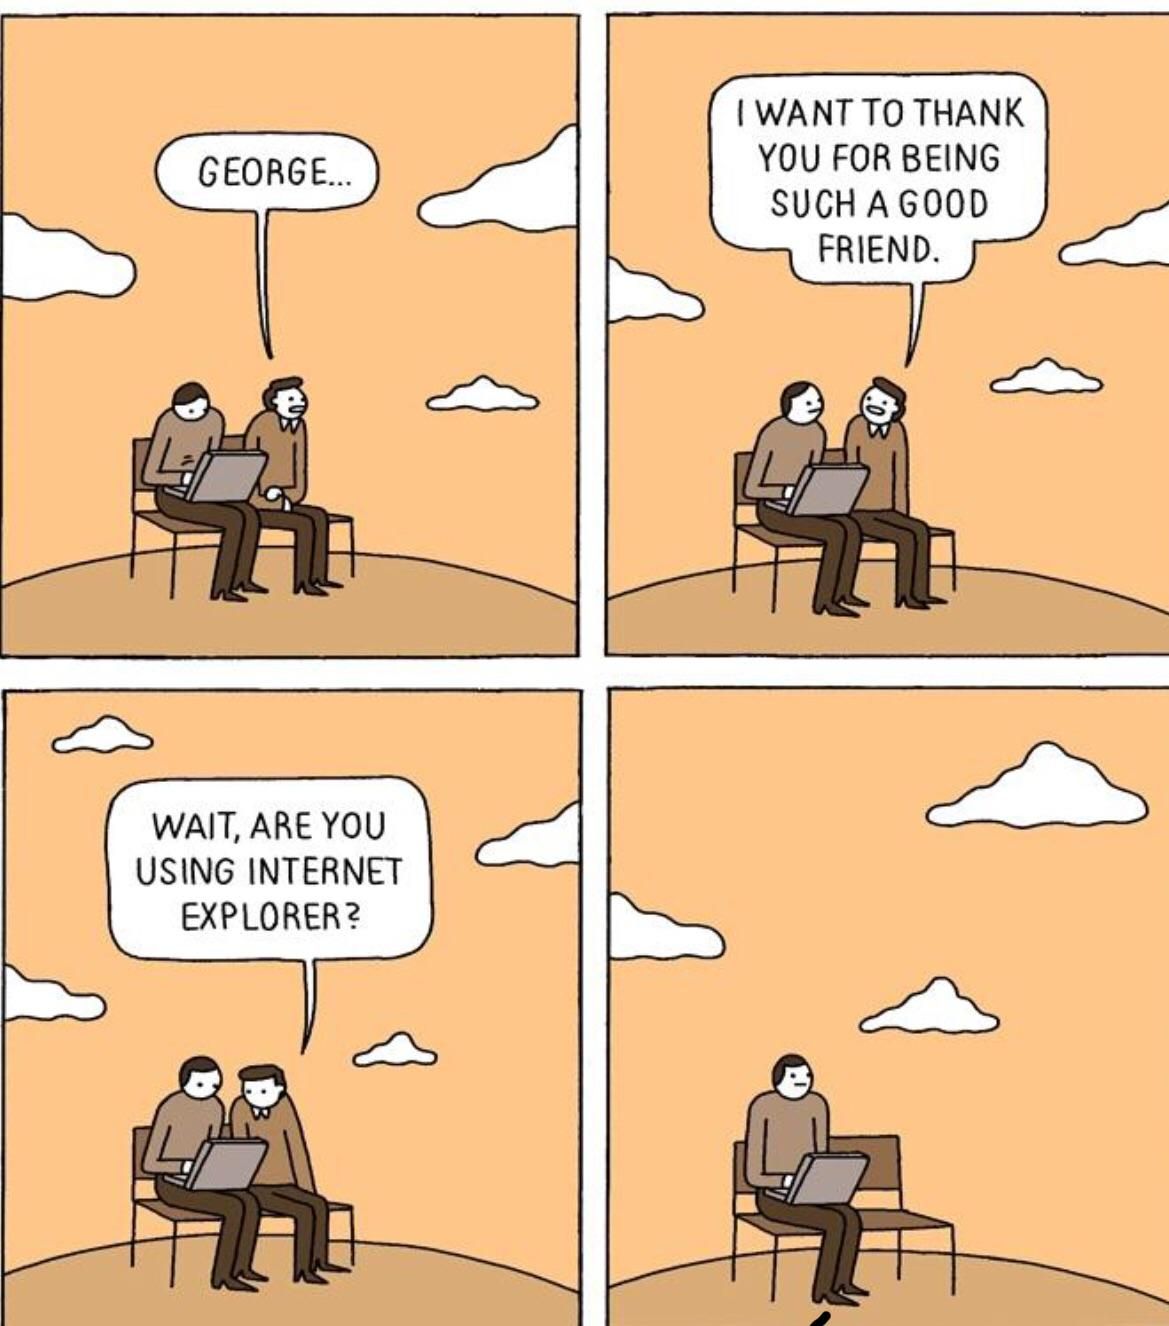 Poor George...